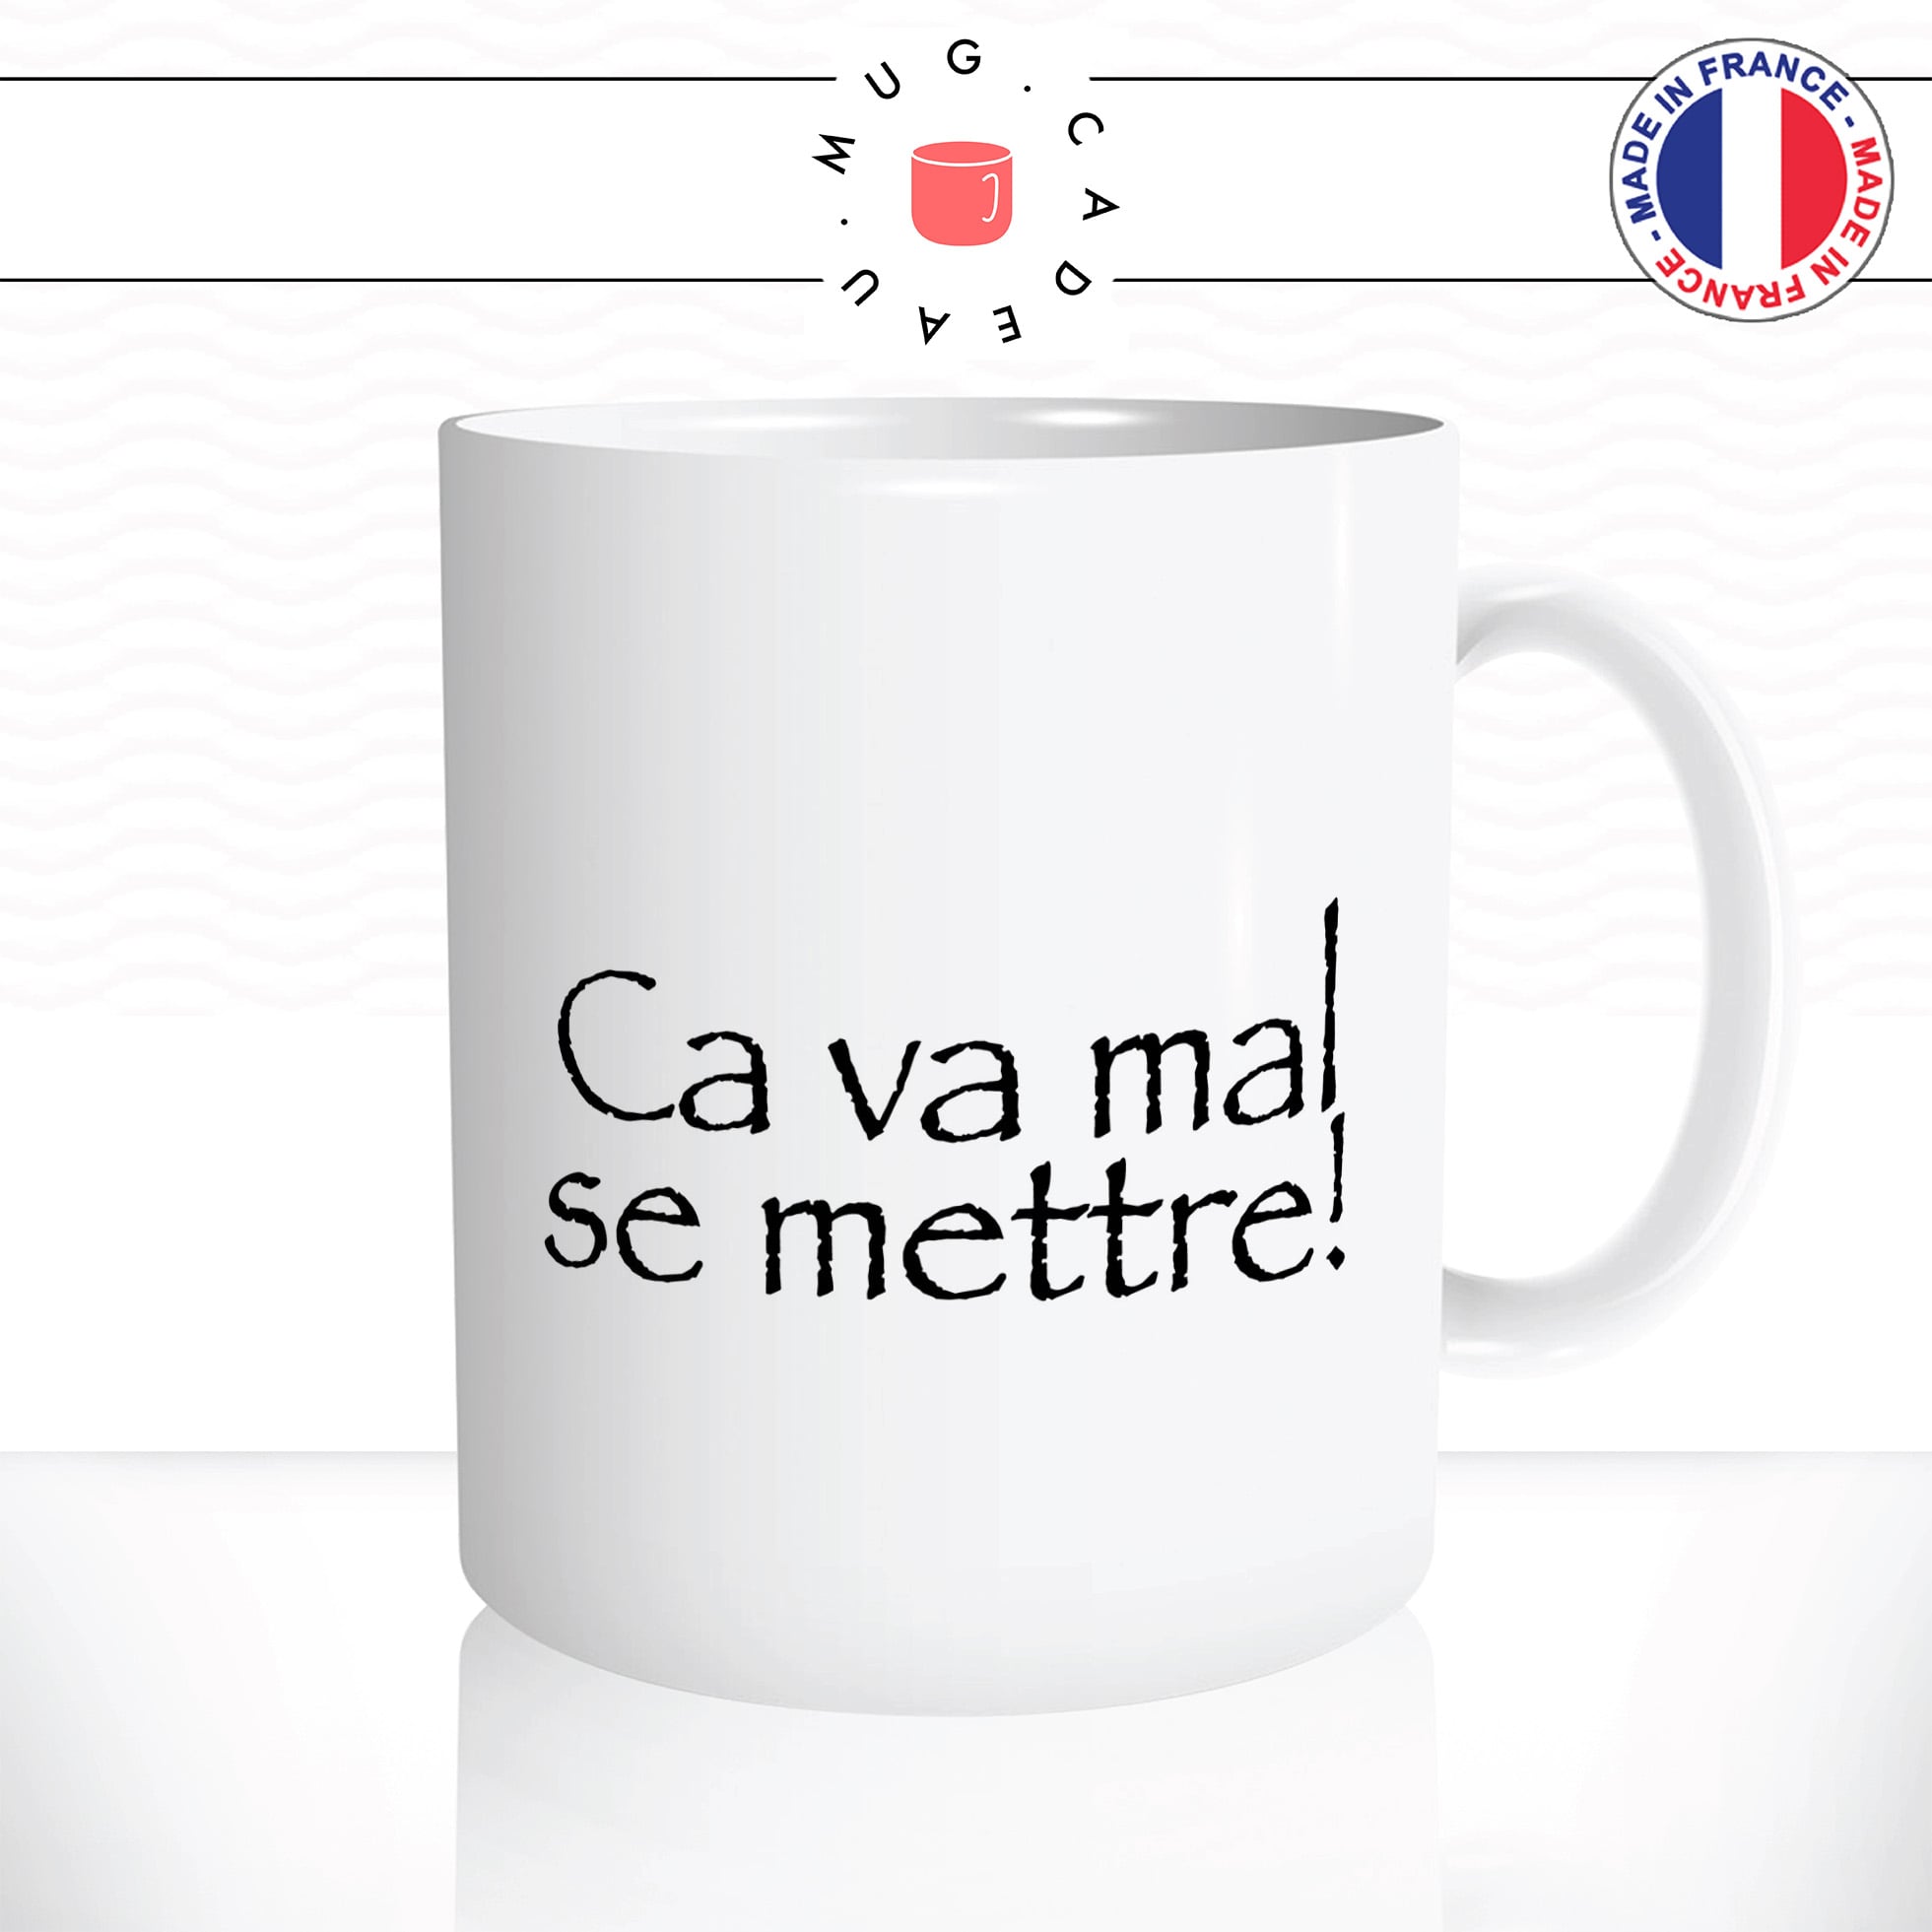 mug-tasse-ca-va-mal-se-mettre-citation-replique-roi-arthur-kaamelott-série-francaise-café-thé-humour-fun-idée-cadeau-original-personnalisée2-min